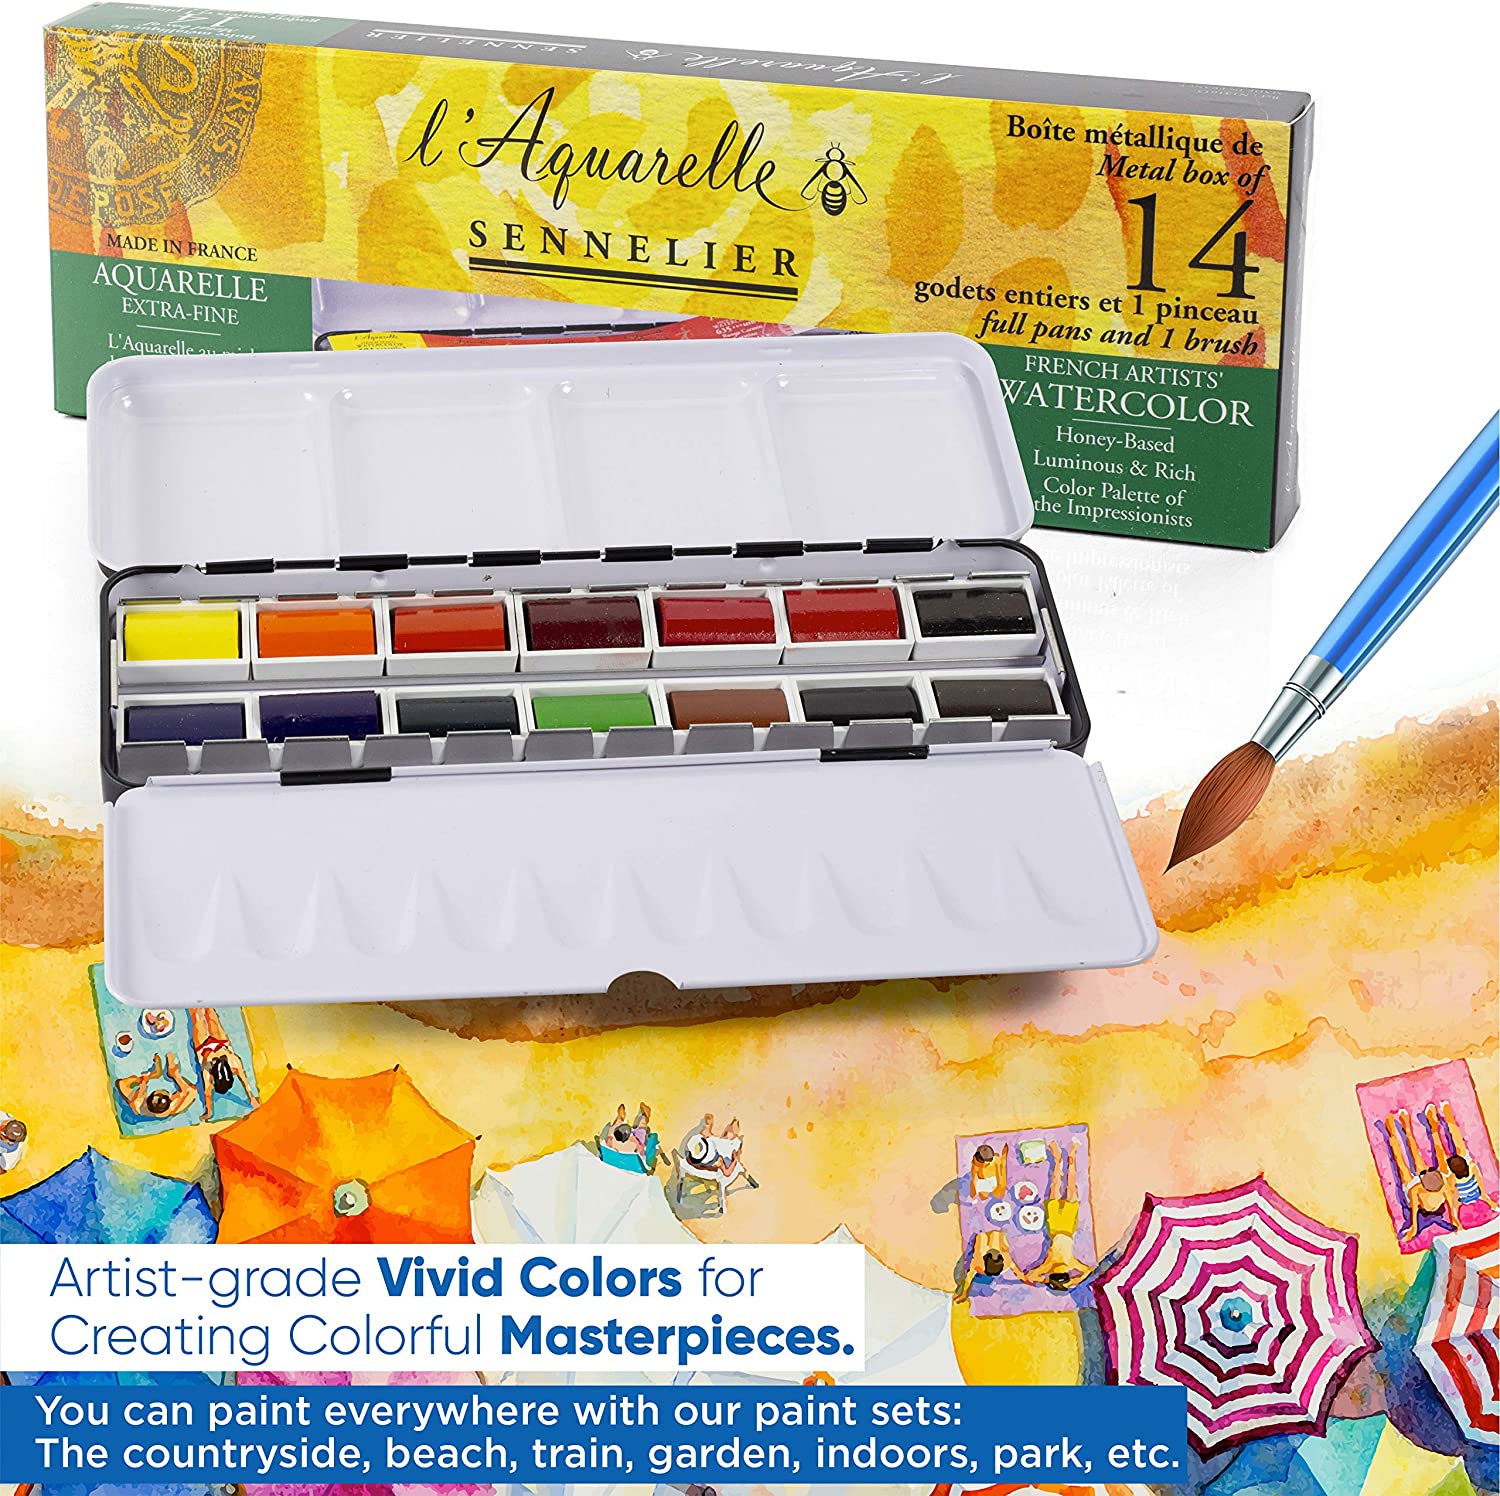 Sennelier - L'Aquarelle Professional Watercolor Paint Set (14 Full Pans) ad